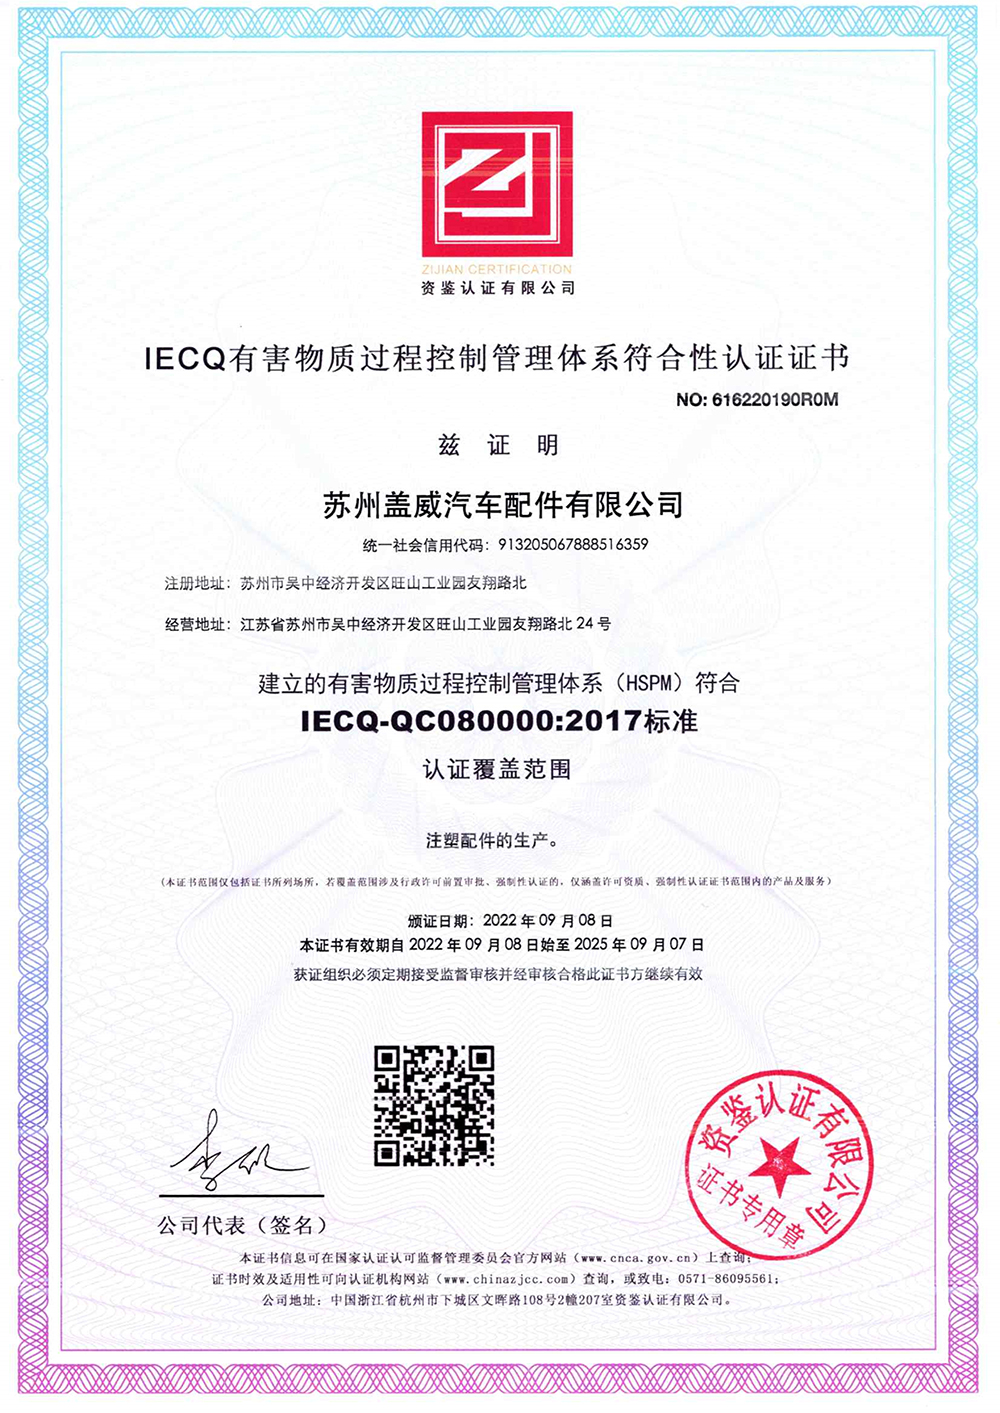 苏州盖威汽车配件有限公司IECQ-QC080000：2017标准认证证书--中文2.jpg